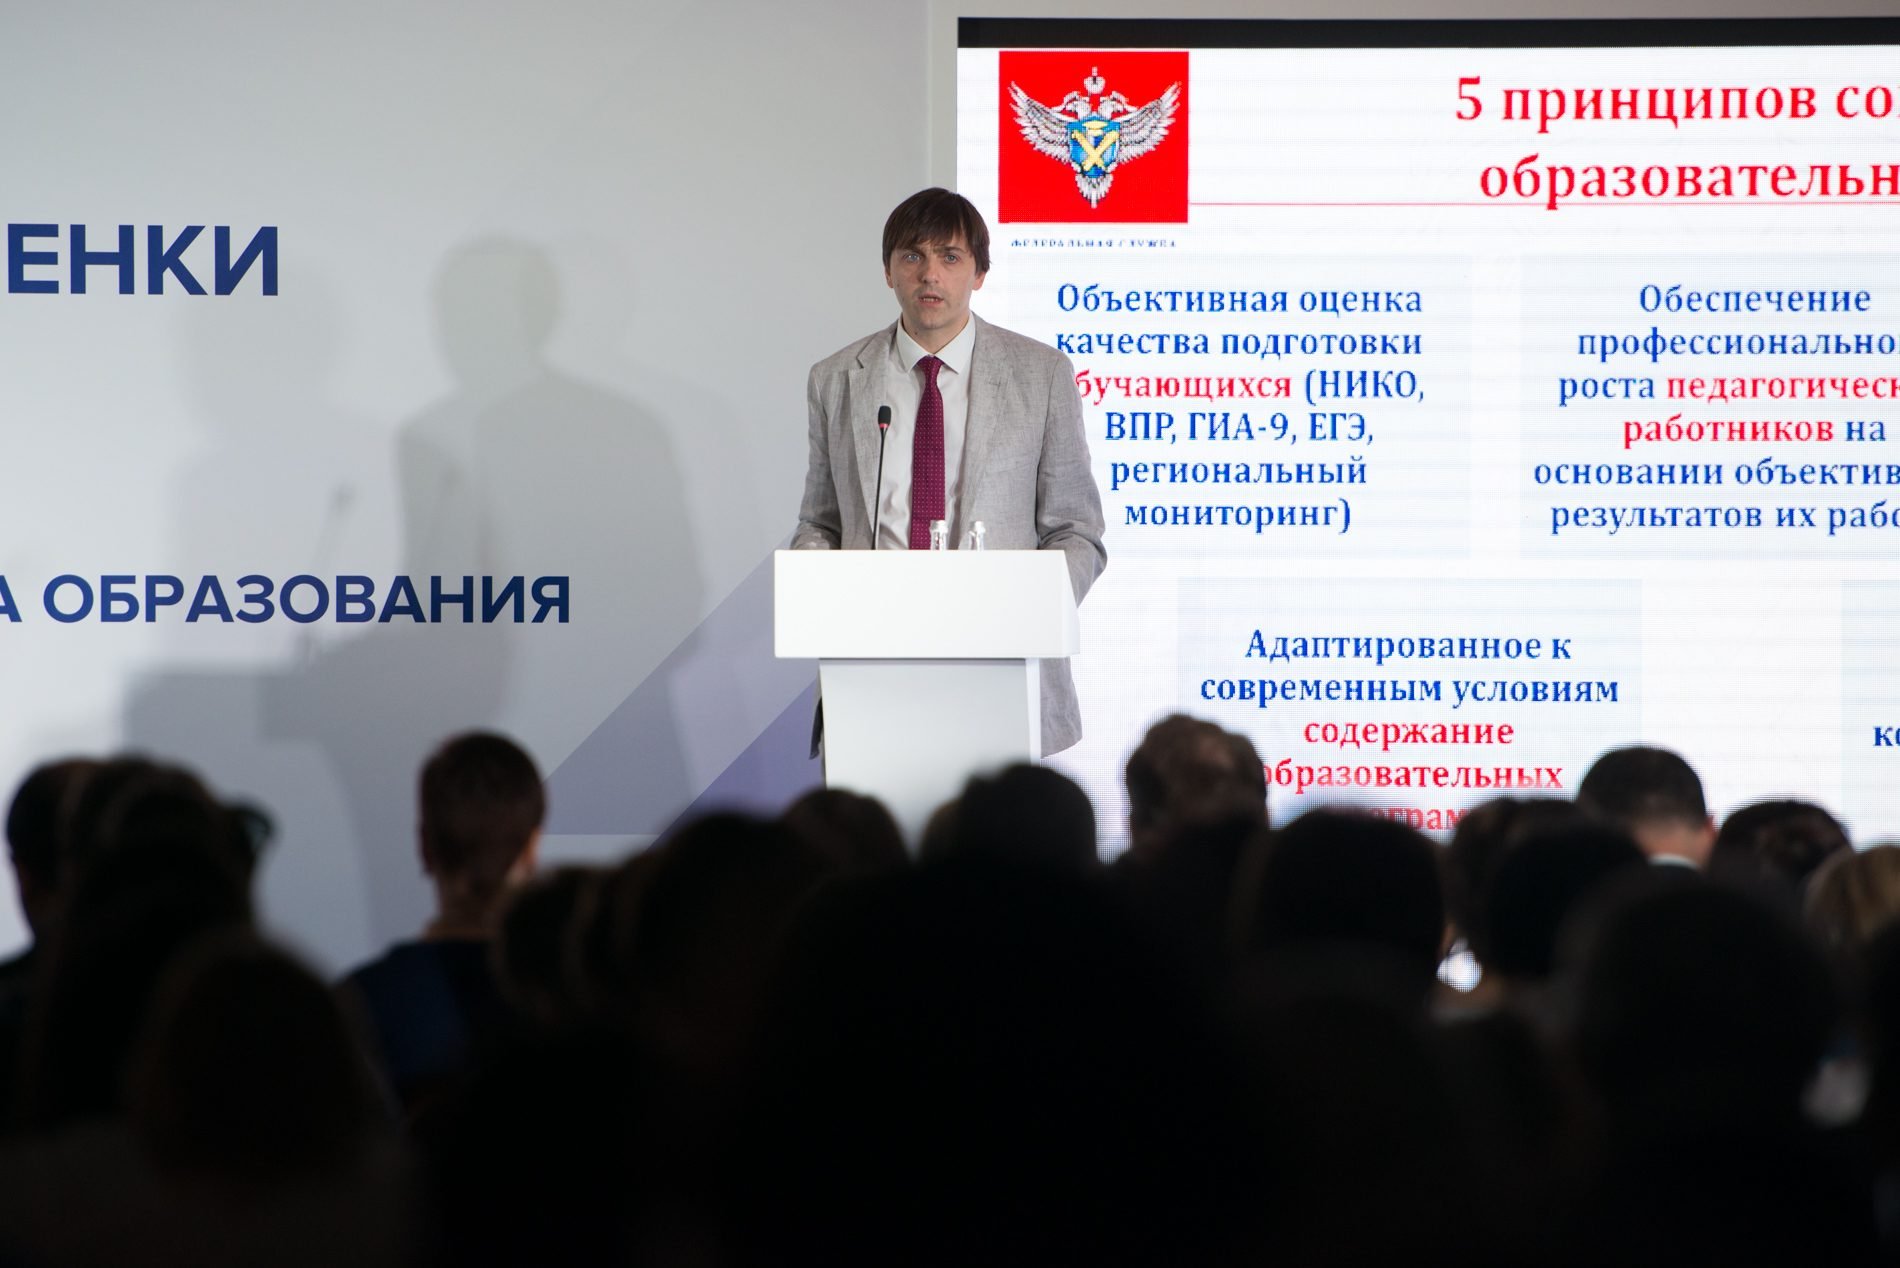 Развитие оценки качества образования в России и использование результатов оценочных процедур обсудили на конференции Рособрнадзора